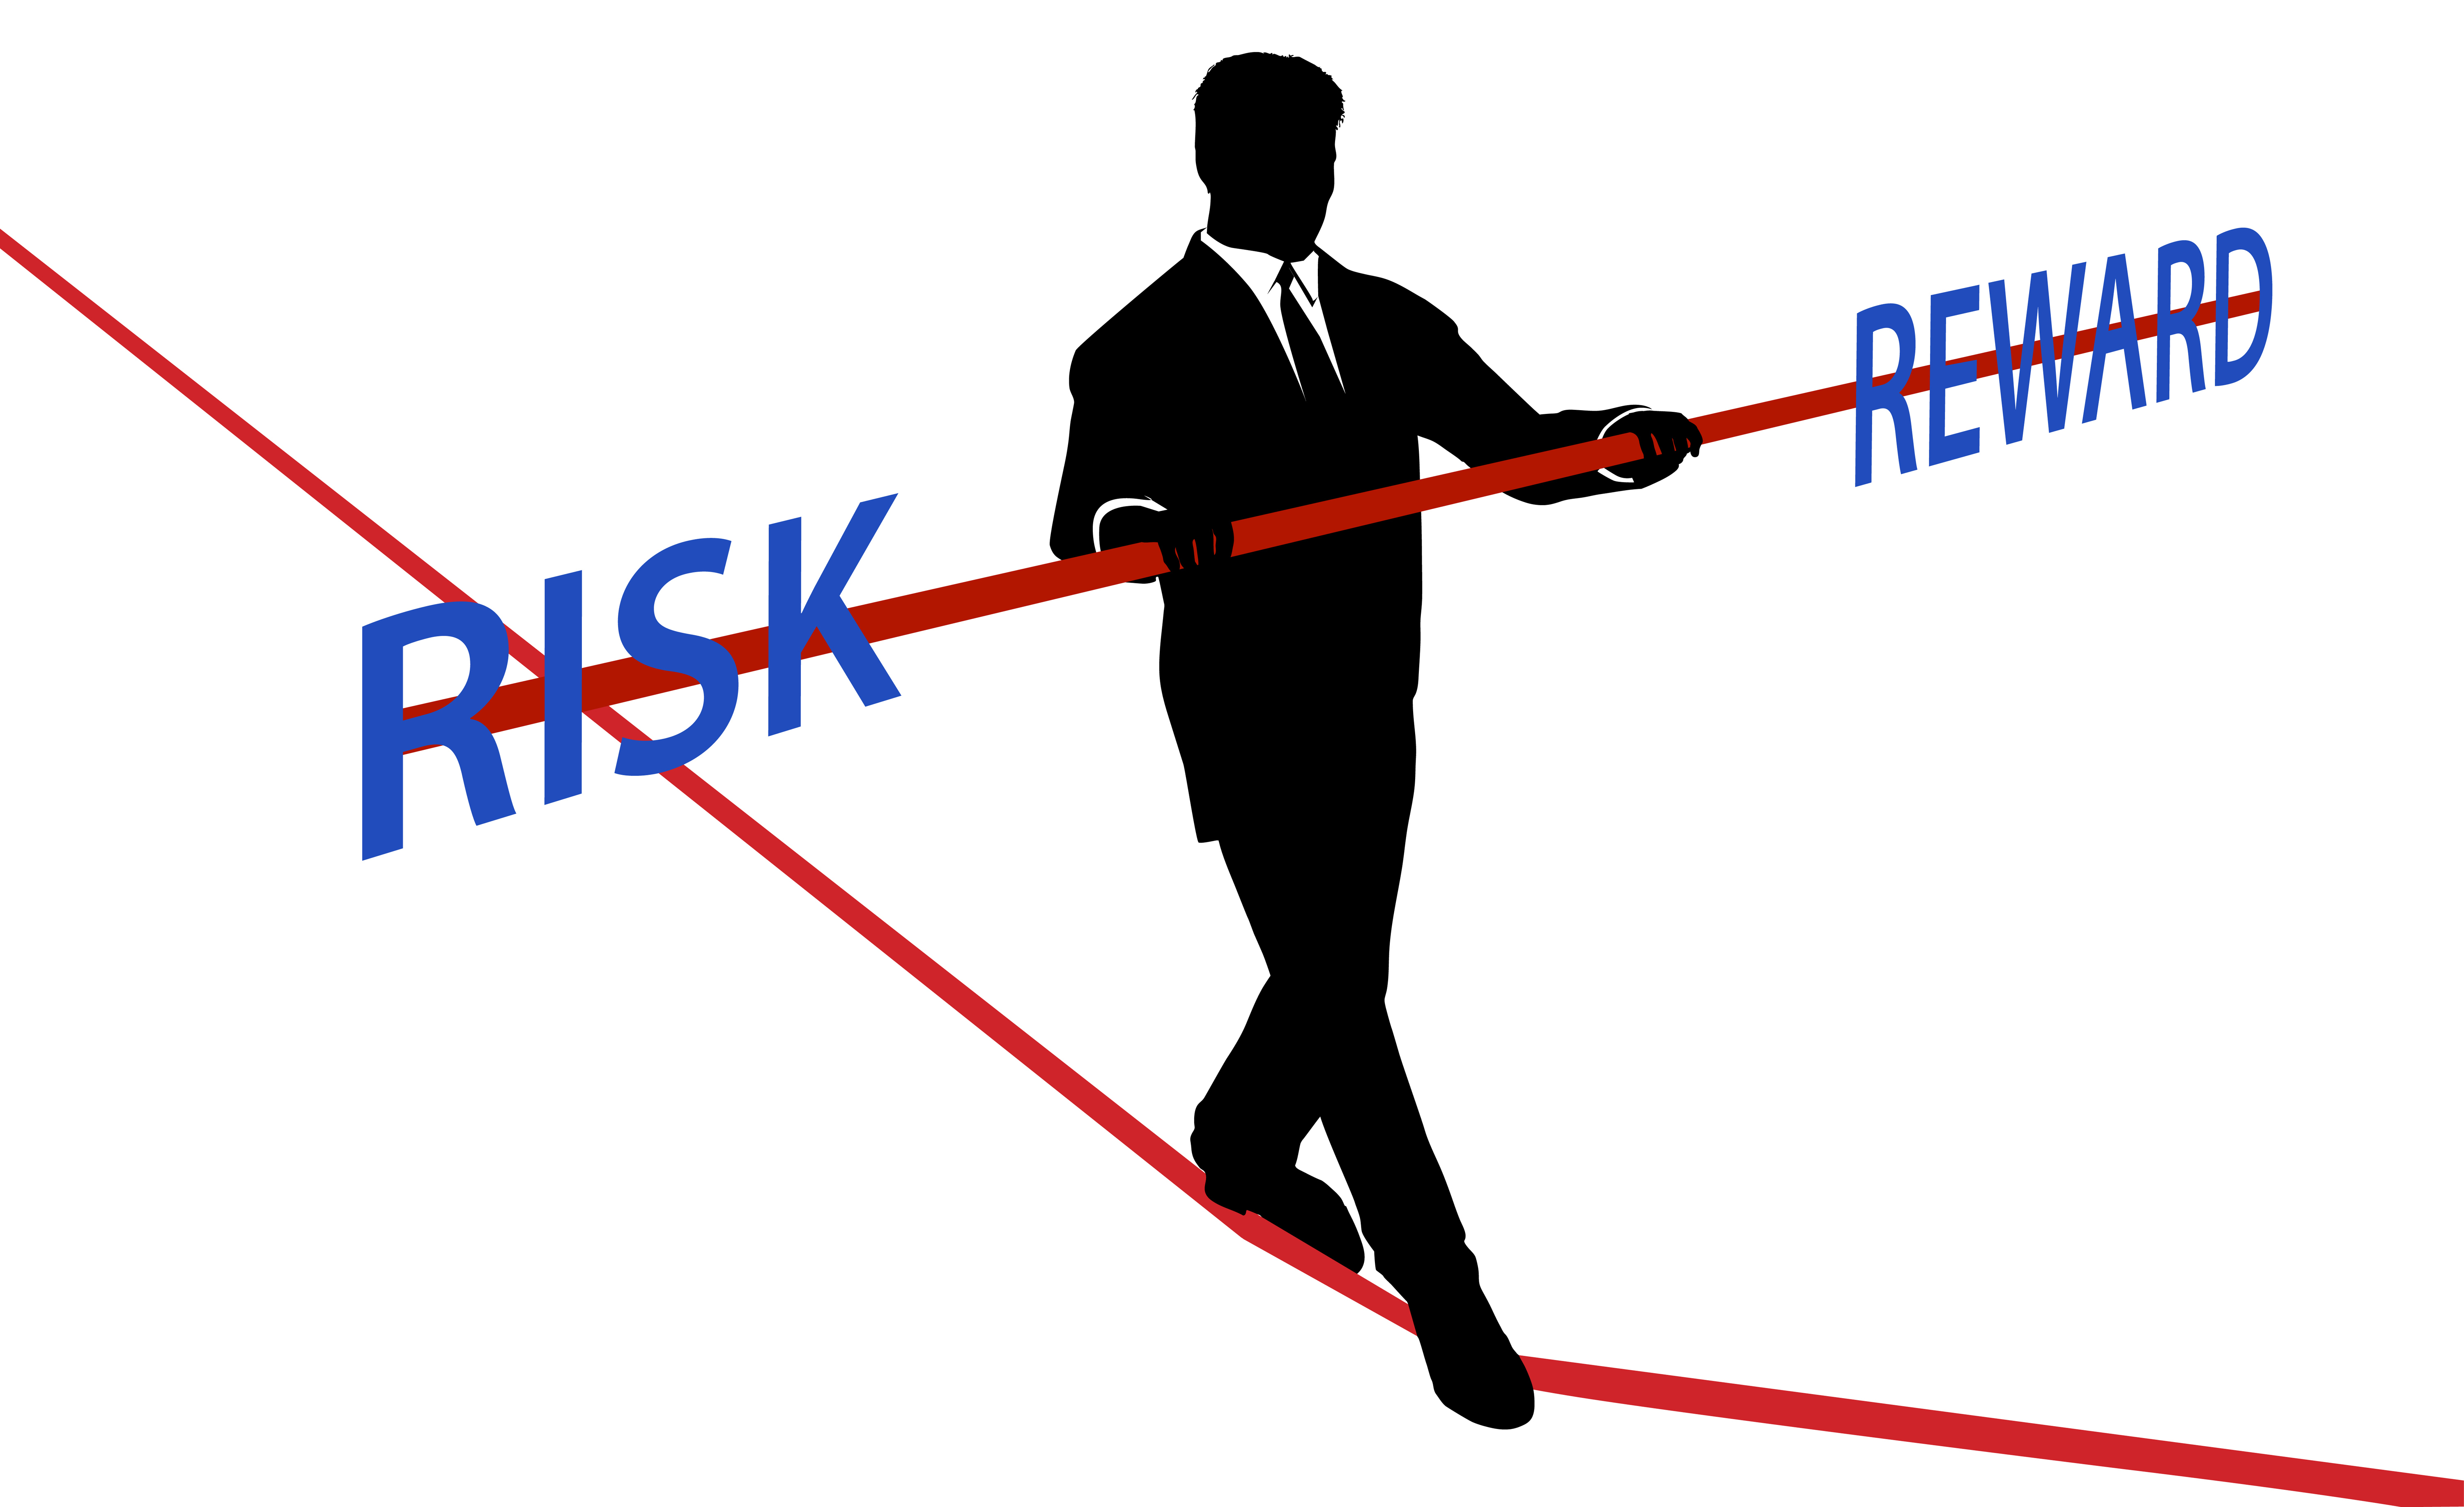 Рекламные риски. Риск и вознаграждение. Вознаграждение за риск иллюстрация. Риск Ревард в трейдинге. Риски и вознаграждения картинка.